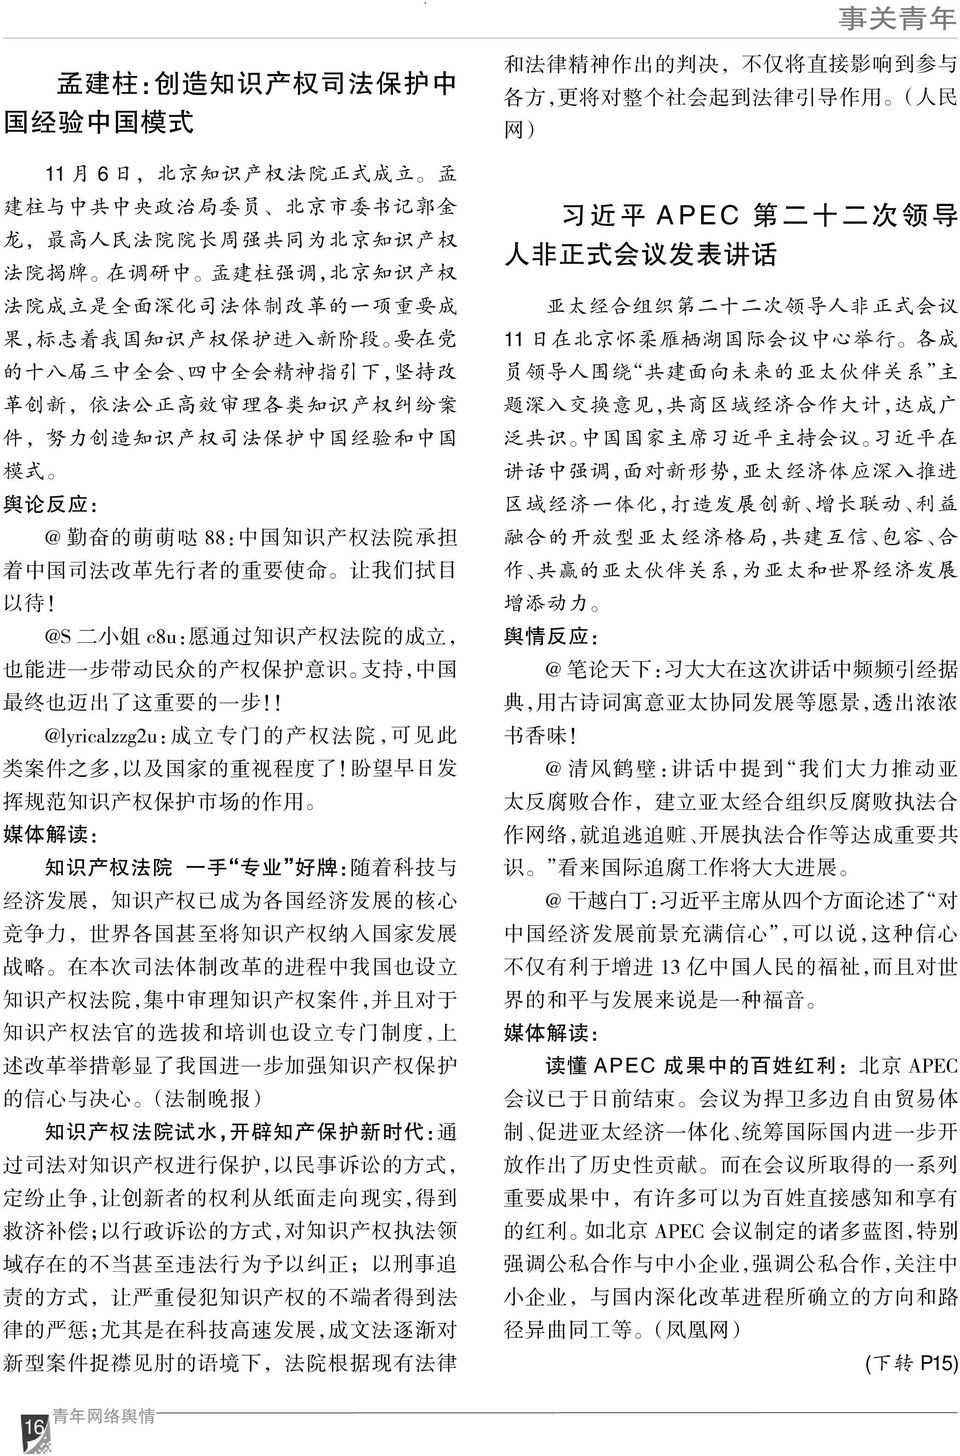 中 国 经 验 和 中 国 模 式 舆 论 反 应 : @ 勤 奋 的 萌 萌 哒 88: 中 国 知 识 产 权 法 院 承 担 着 中 国 司 法 改 革 先 行 者 的 重 要 使 命 让 我 们 拭 目 以 待!